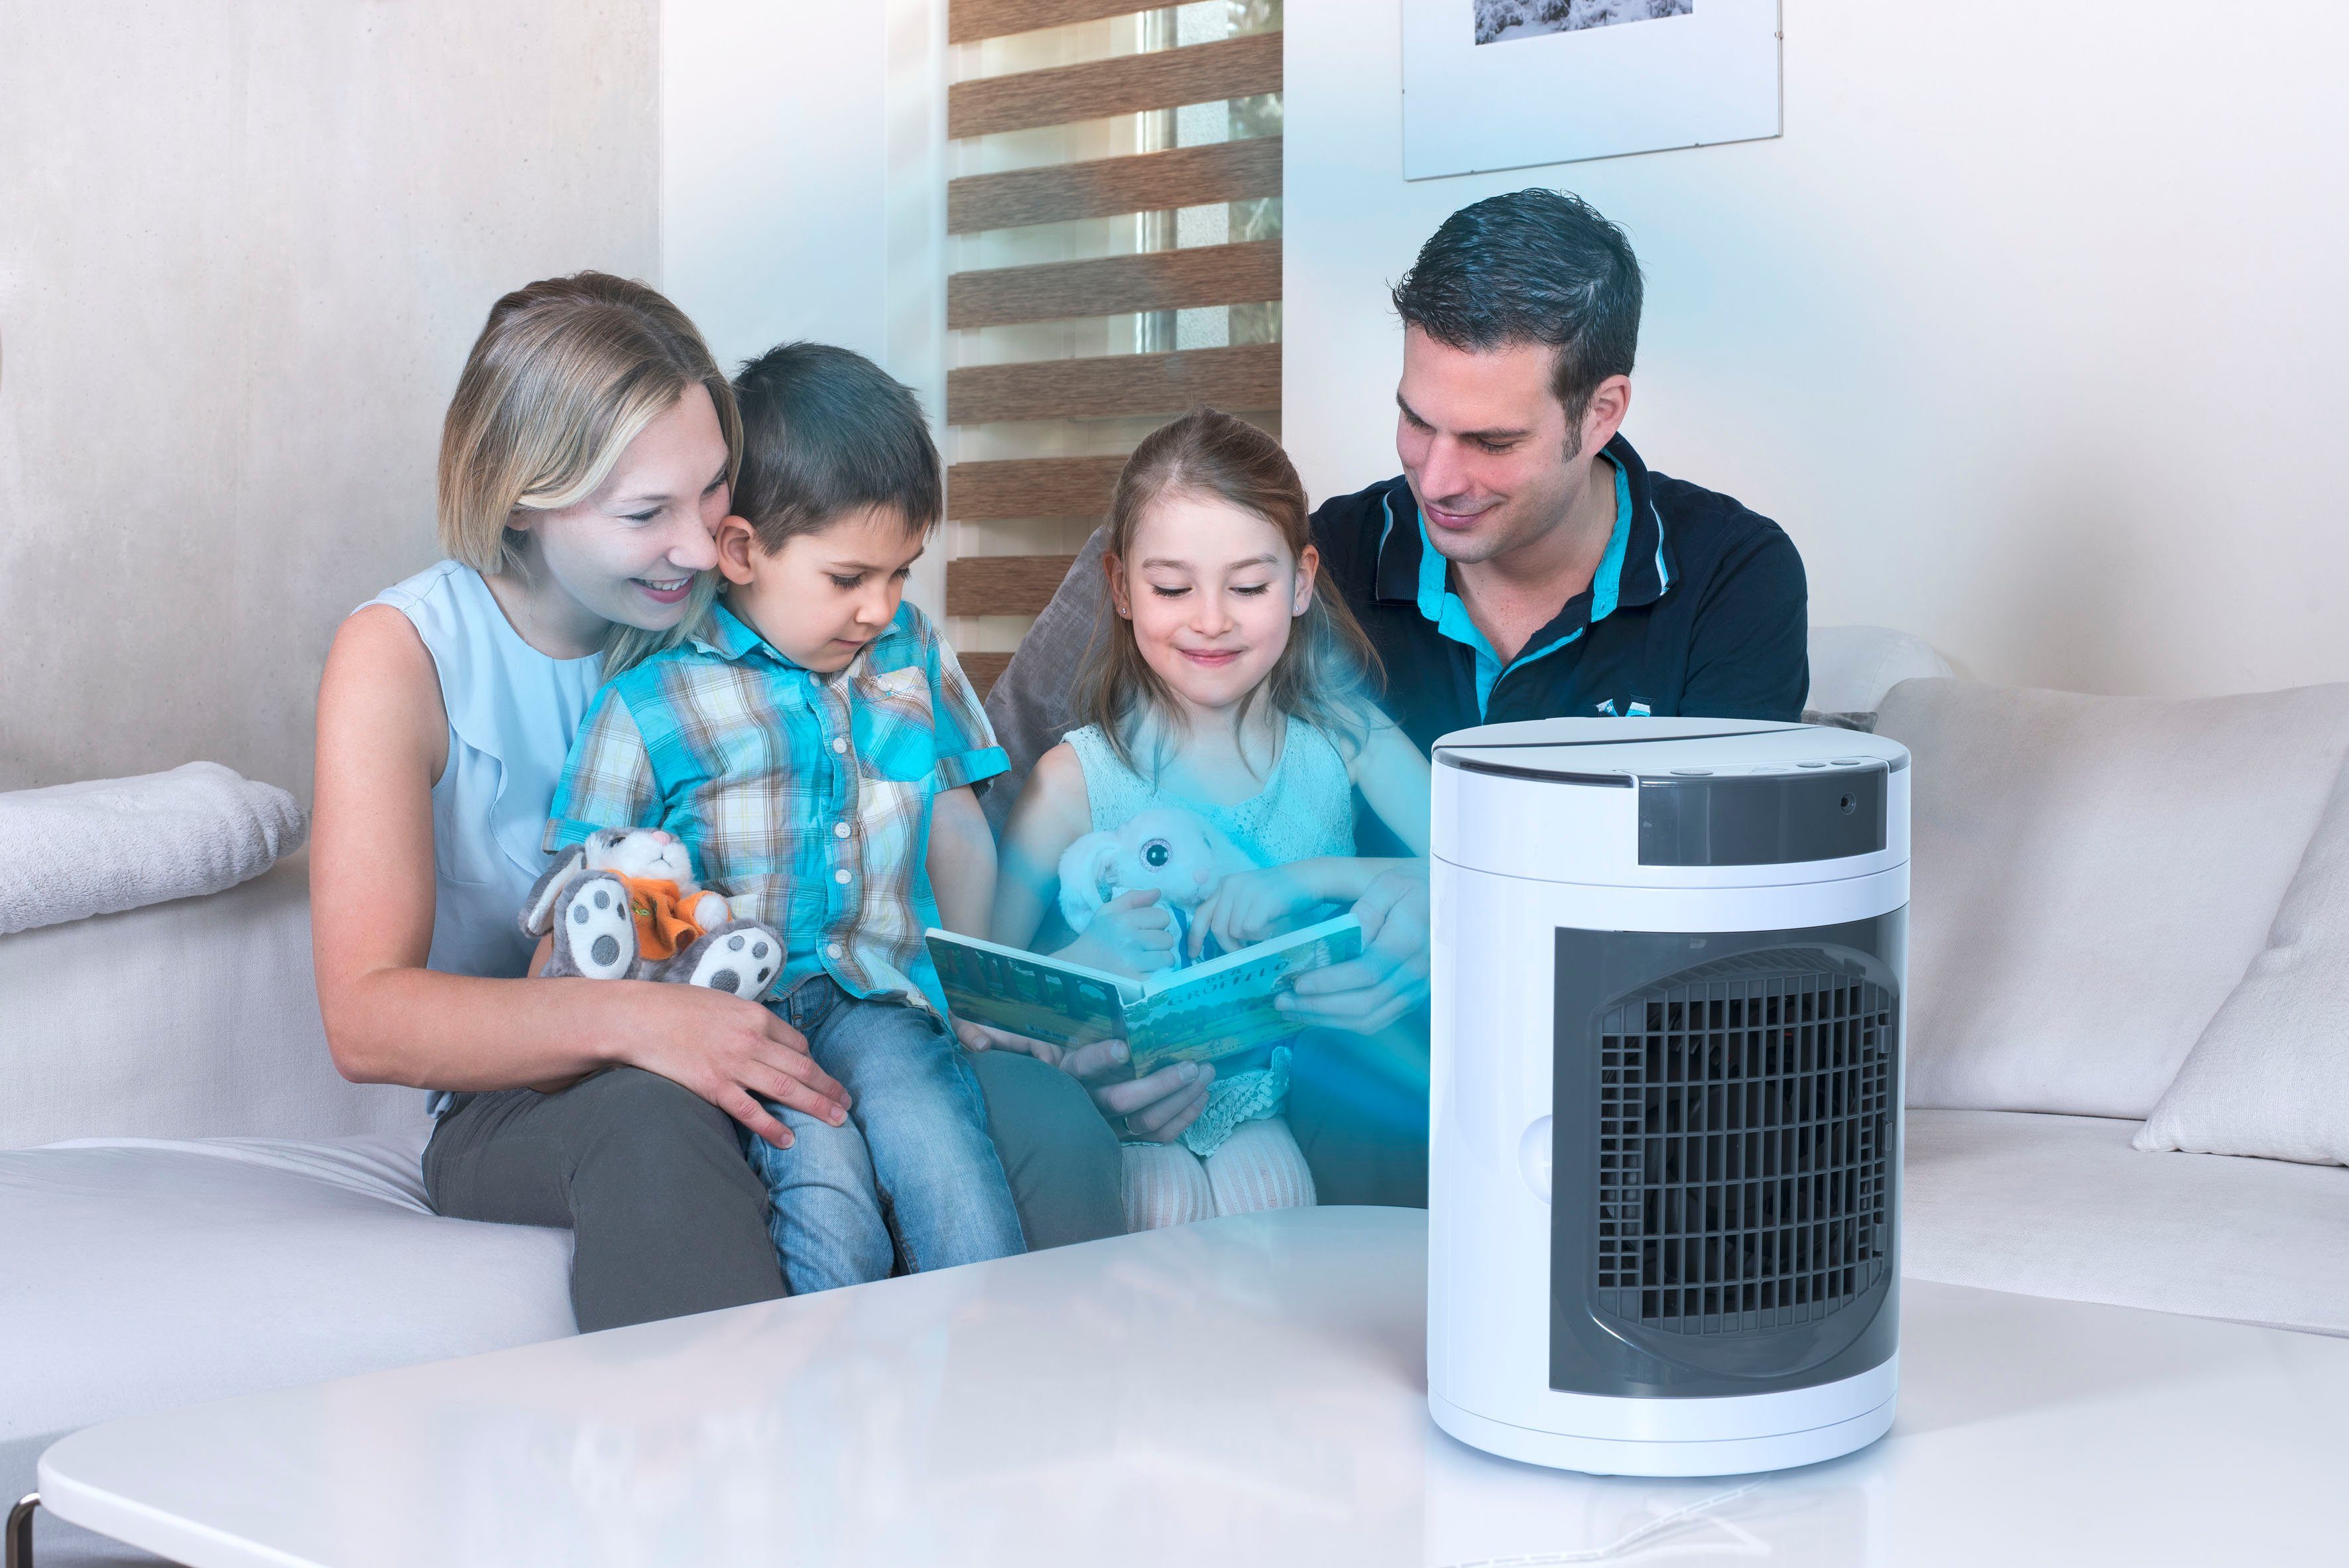 MediaShop Ventilatorkombigerät Smart Luftkühler Chill